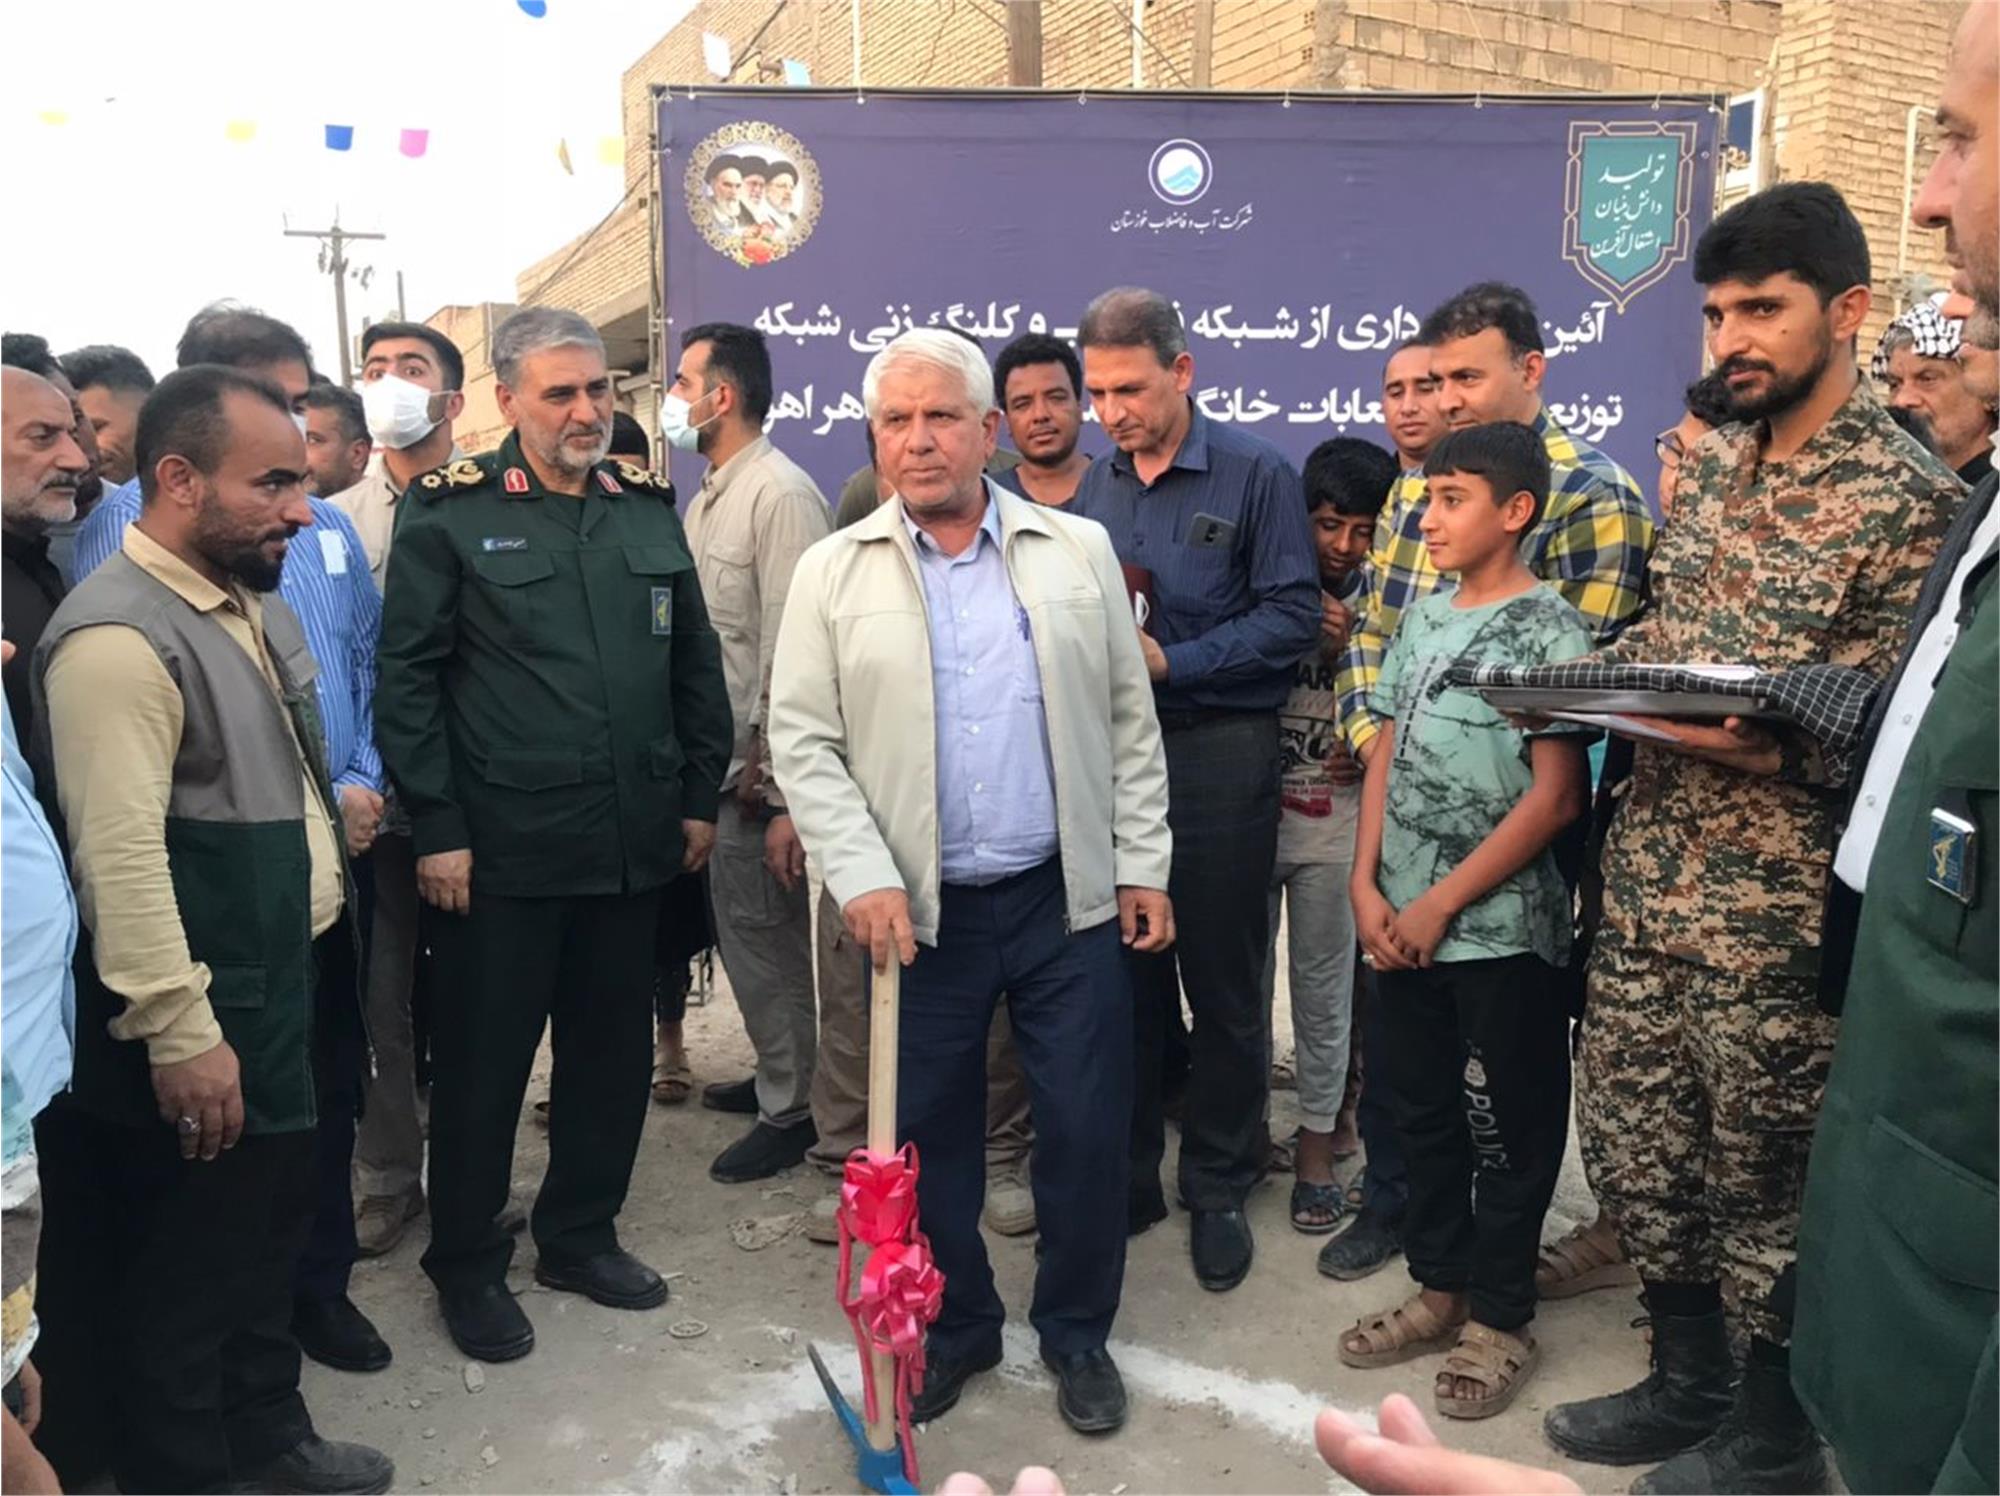 بهره برداری از شبکه فاضلاب و کلنگ زنی شبکه توزیع آب و انشعابات خانگی در منطقه کوی طاهر اهواز